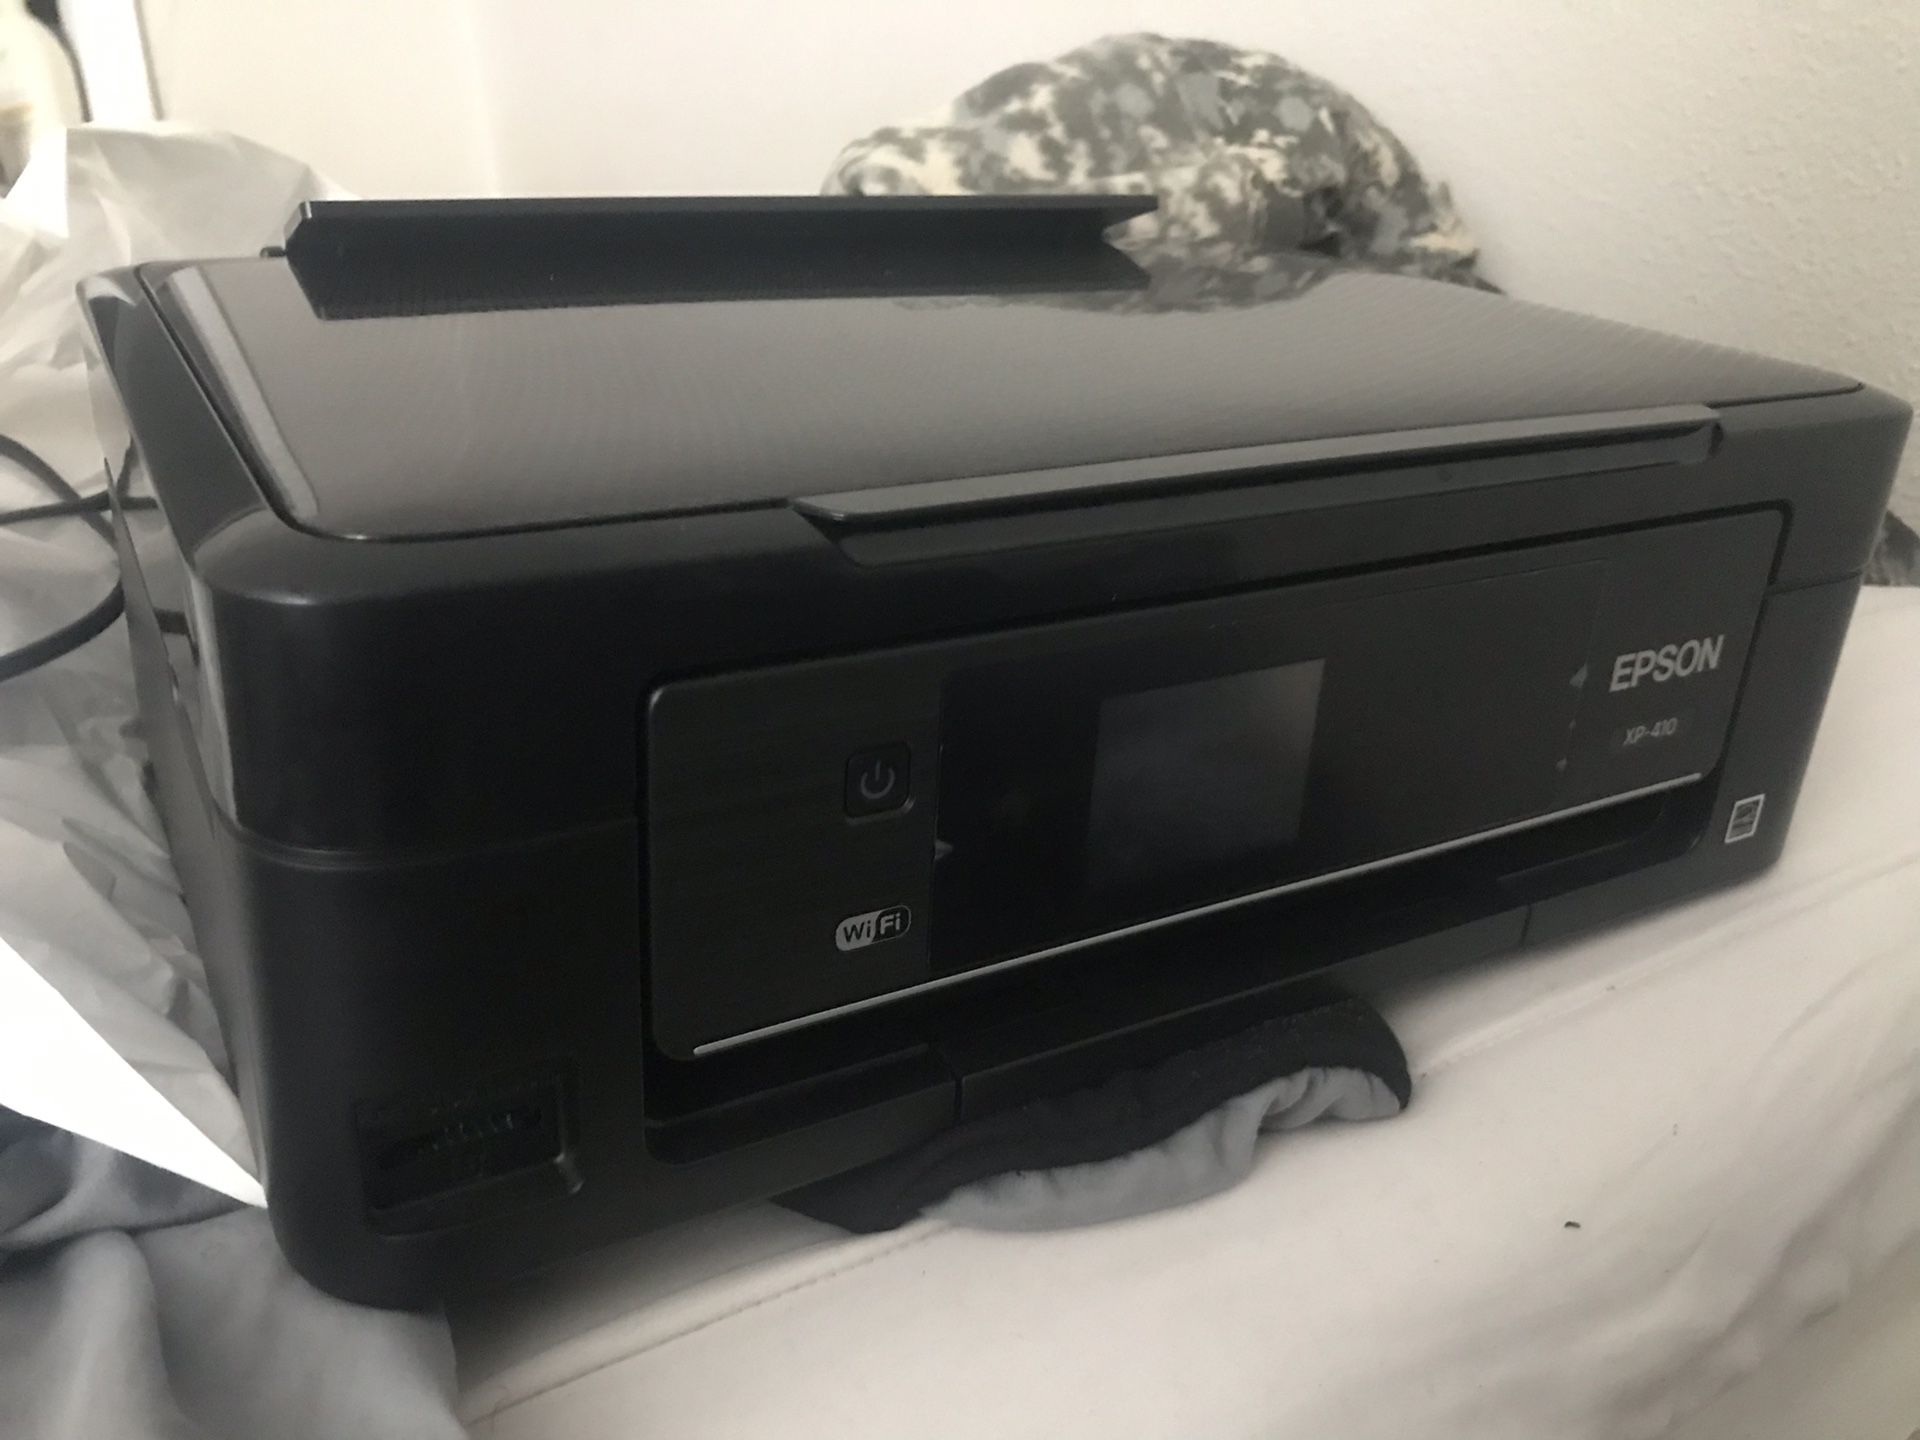 Epson Wifi printer